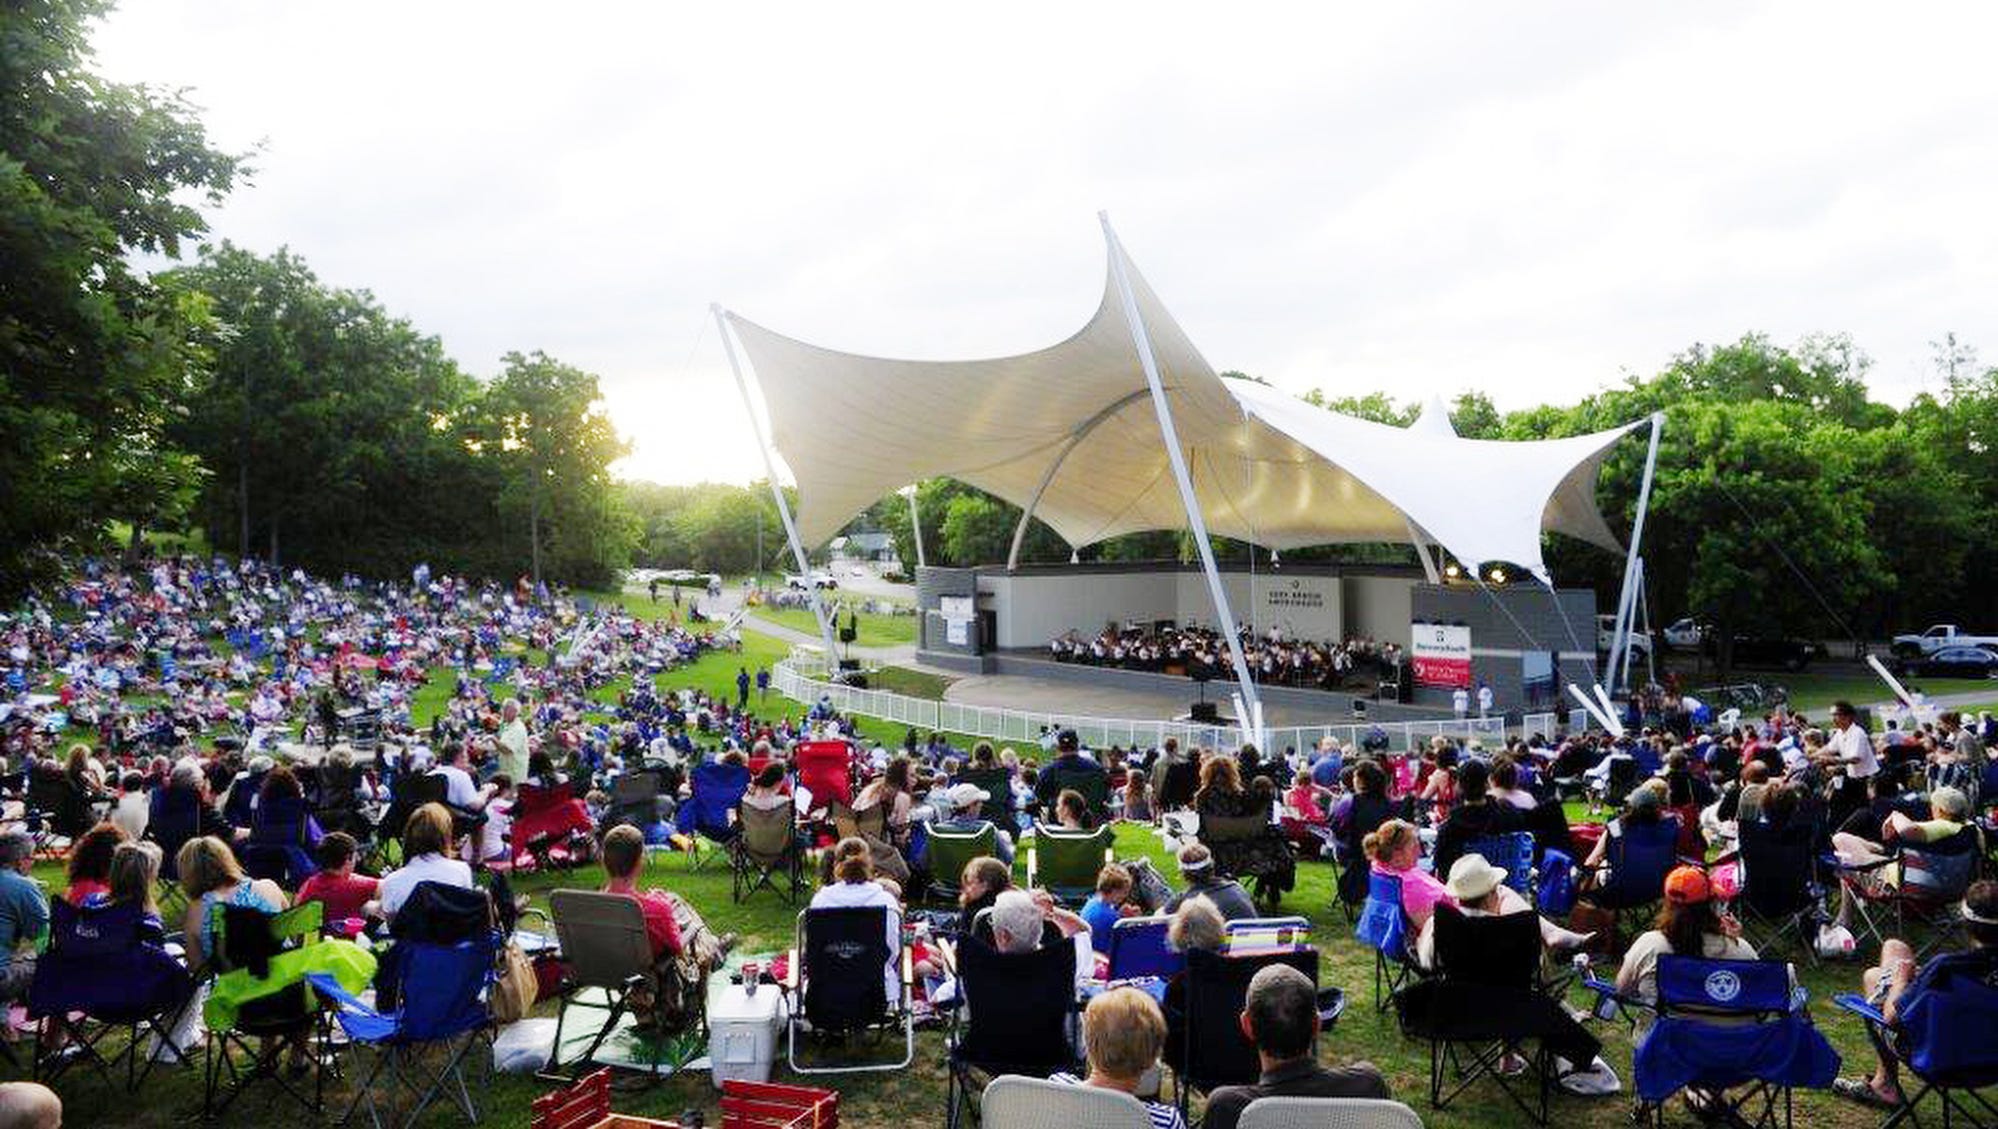 Nashville Symphony's 'Symphony in the Park' 2017 dates set